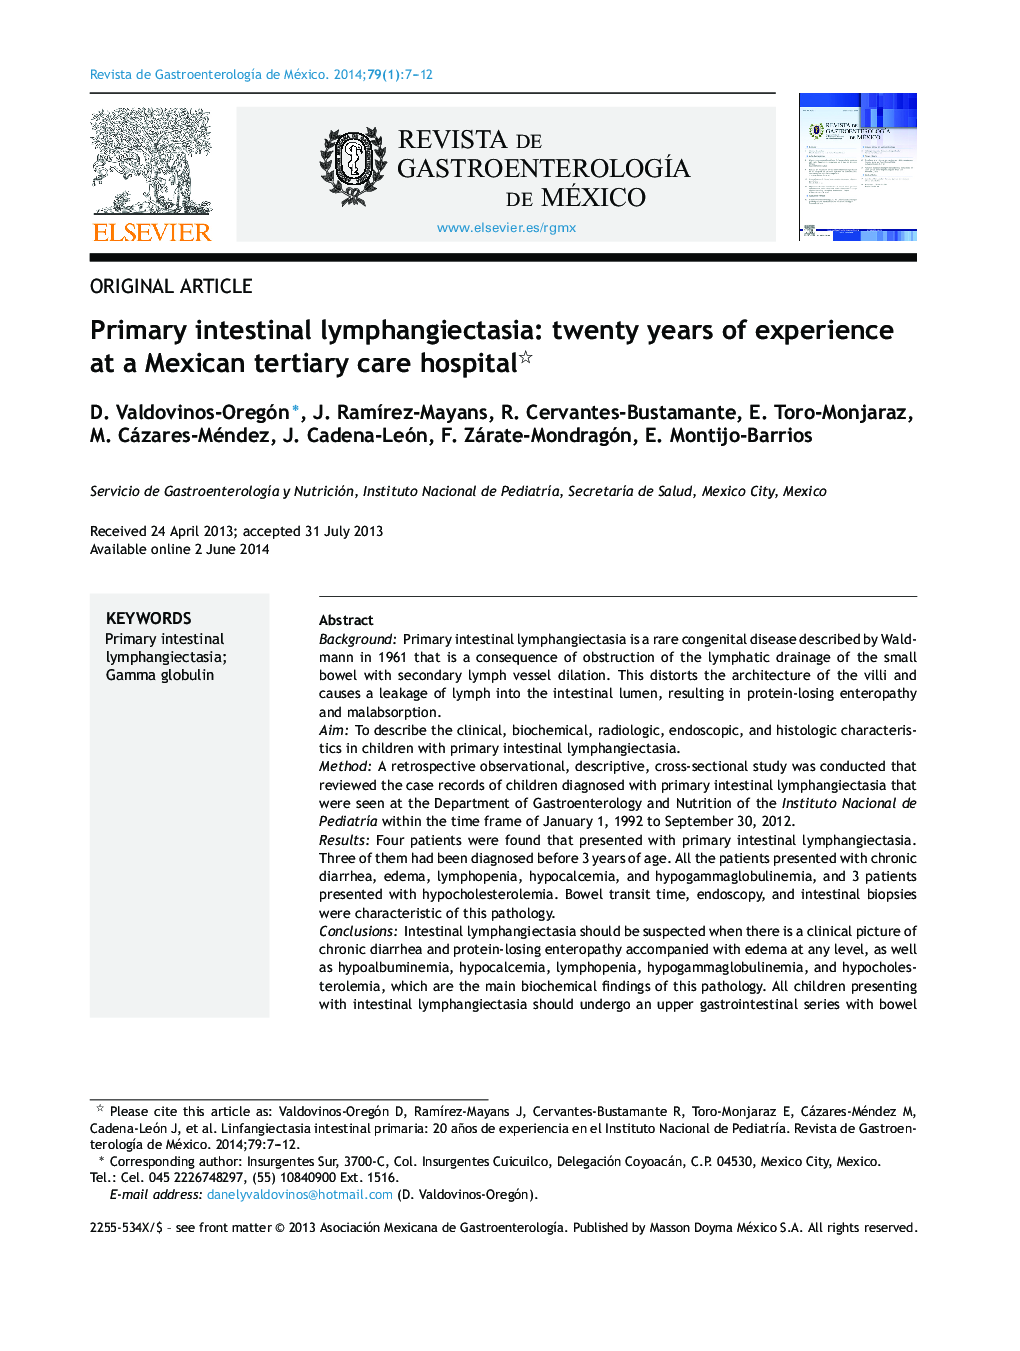 لنفانکتکتازی روده اولیه: بیست سال تجربه در بیمارستان مراقبت از بیمارستان مکزیک 